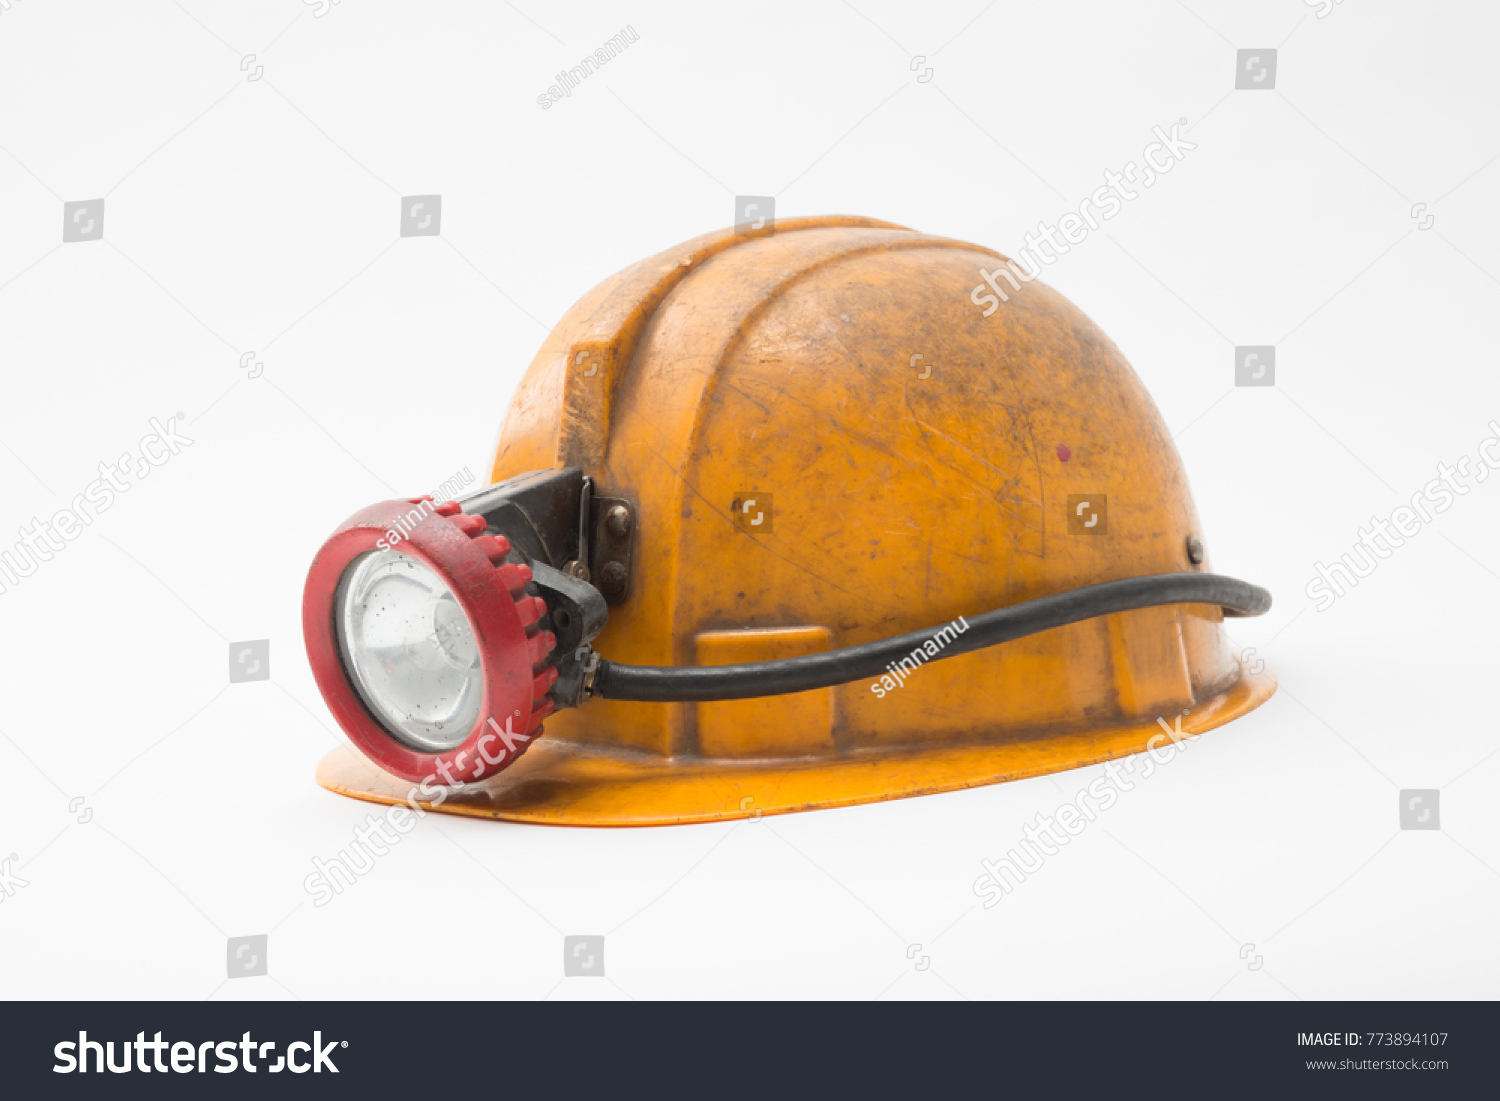 Fallout 4 шахтерская каска с фонарем фото 87